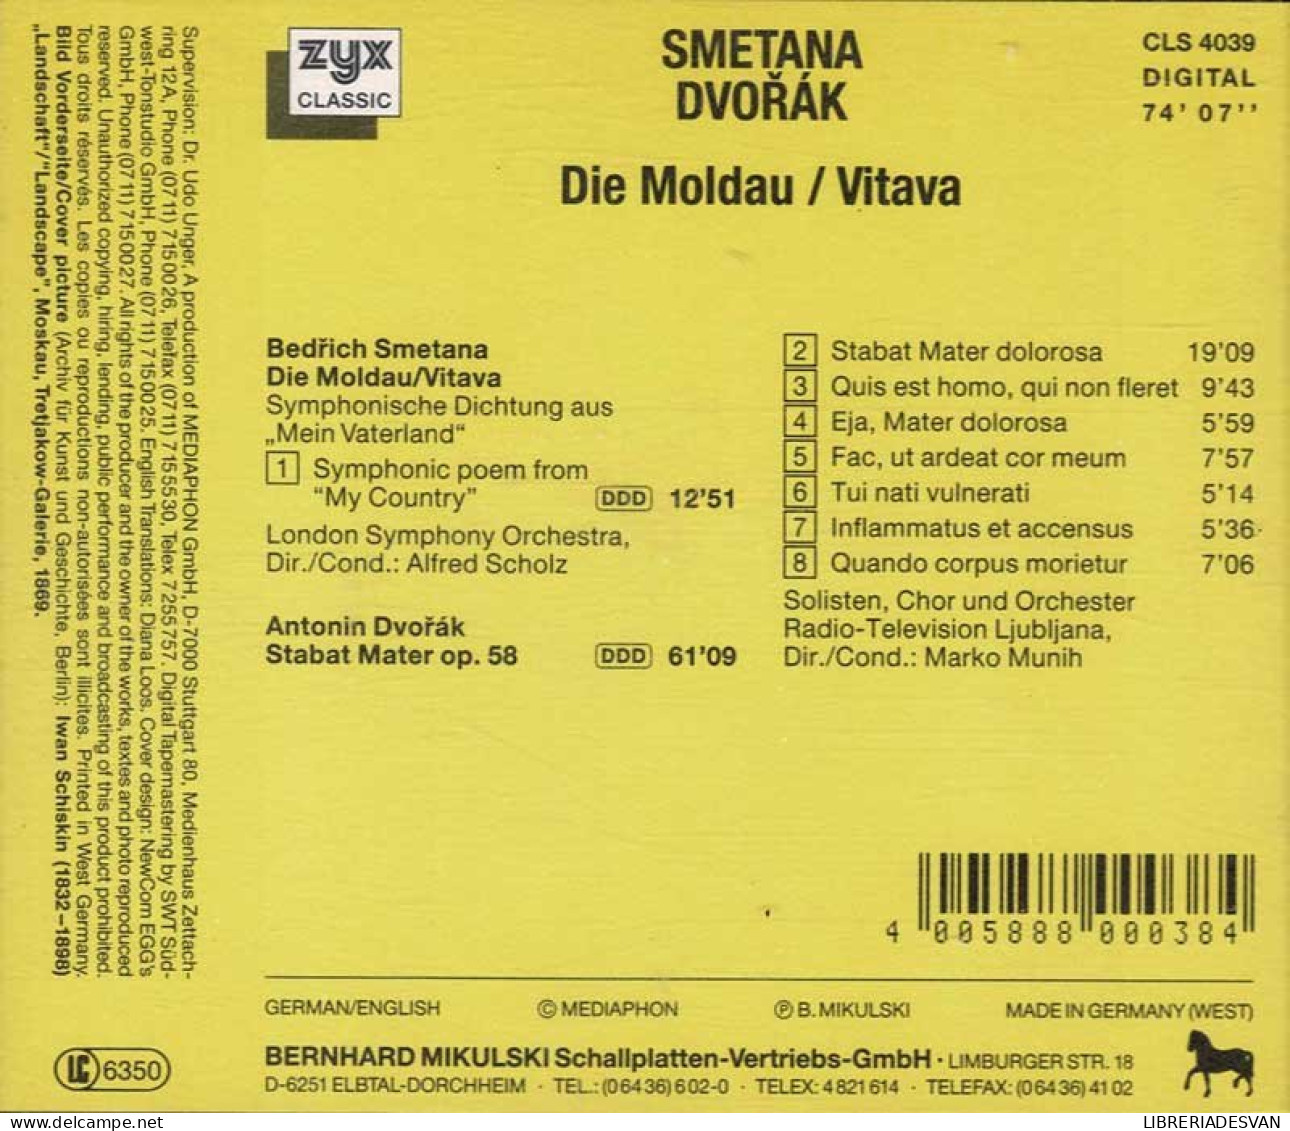 Smetana Dvorak - Die Moldau / Vitava. CD - Clásica